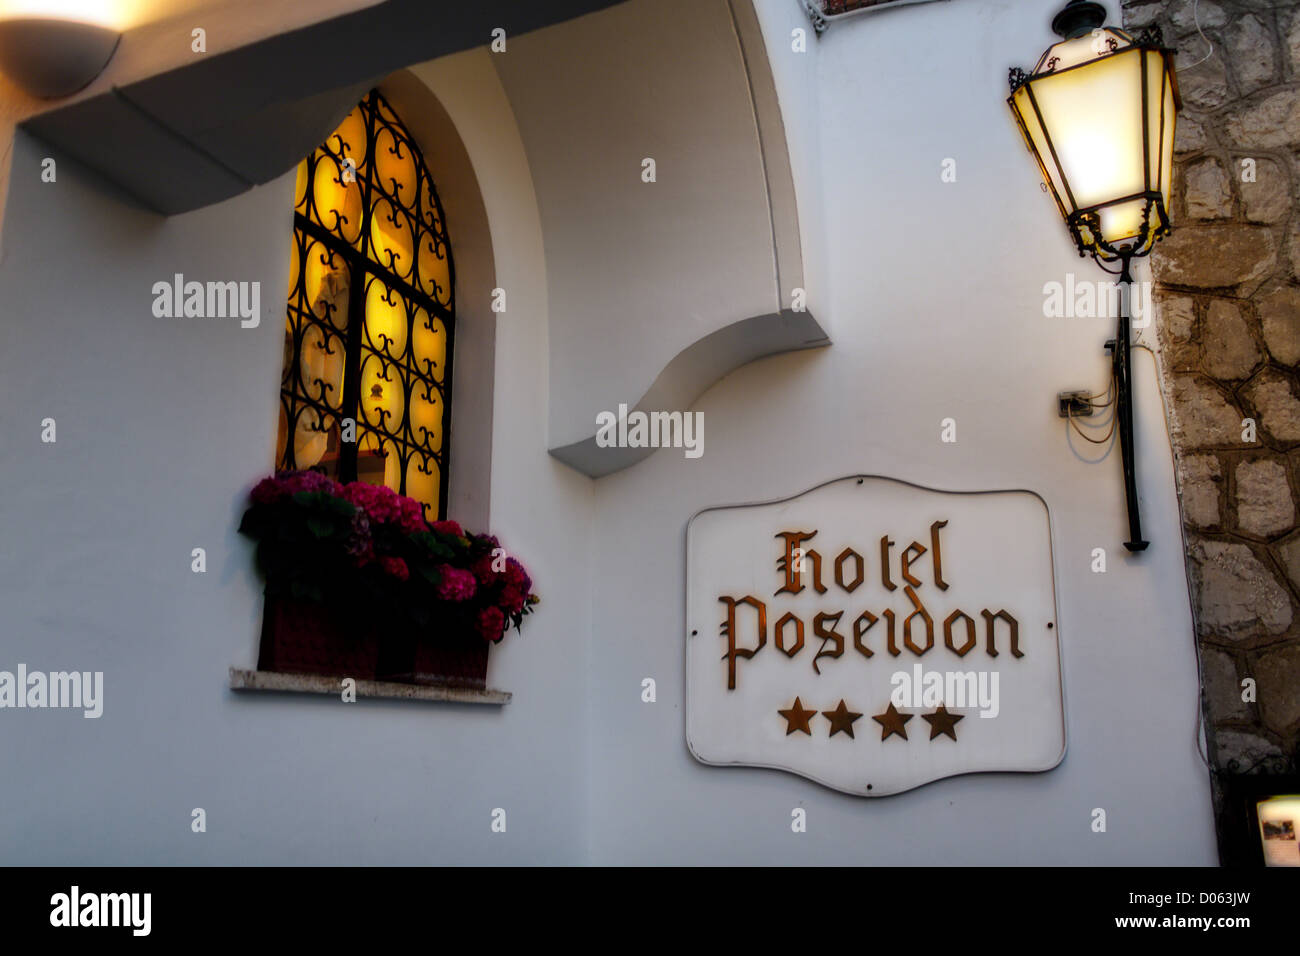 Hotel Sign with a Lamp, Hotel Poseidon, Positano, Campania, Italy Stock Photo